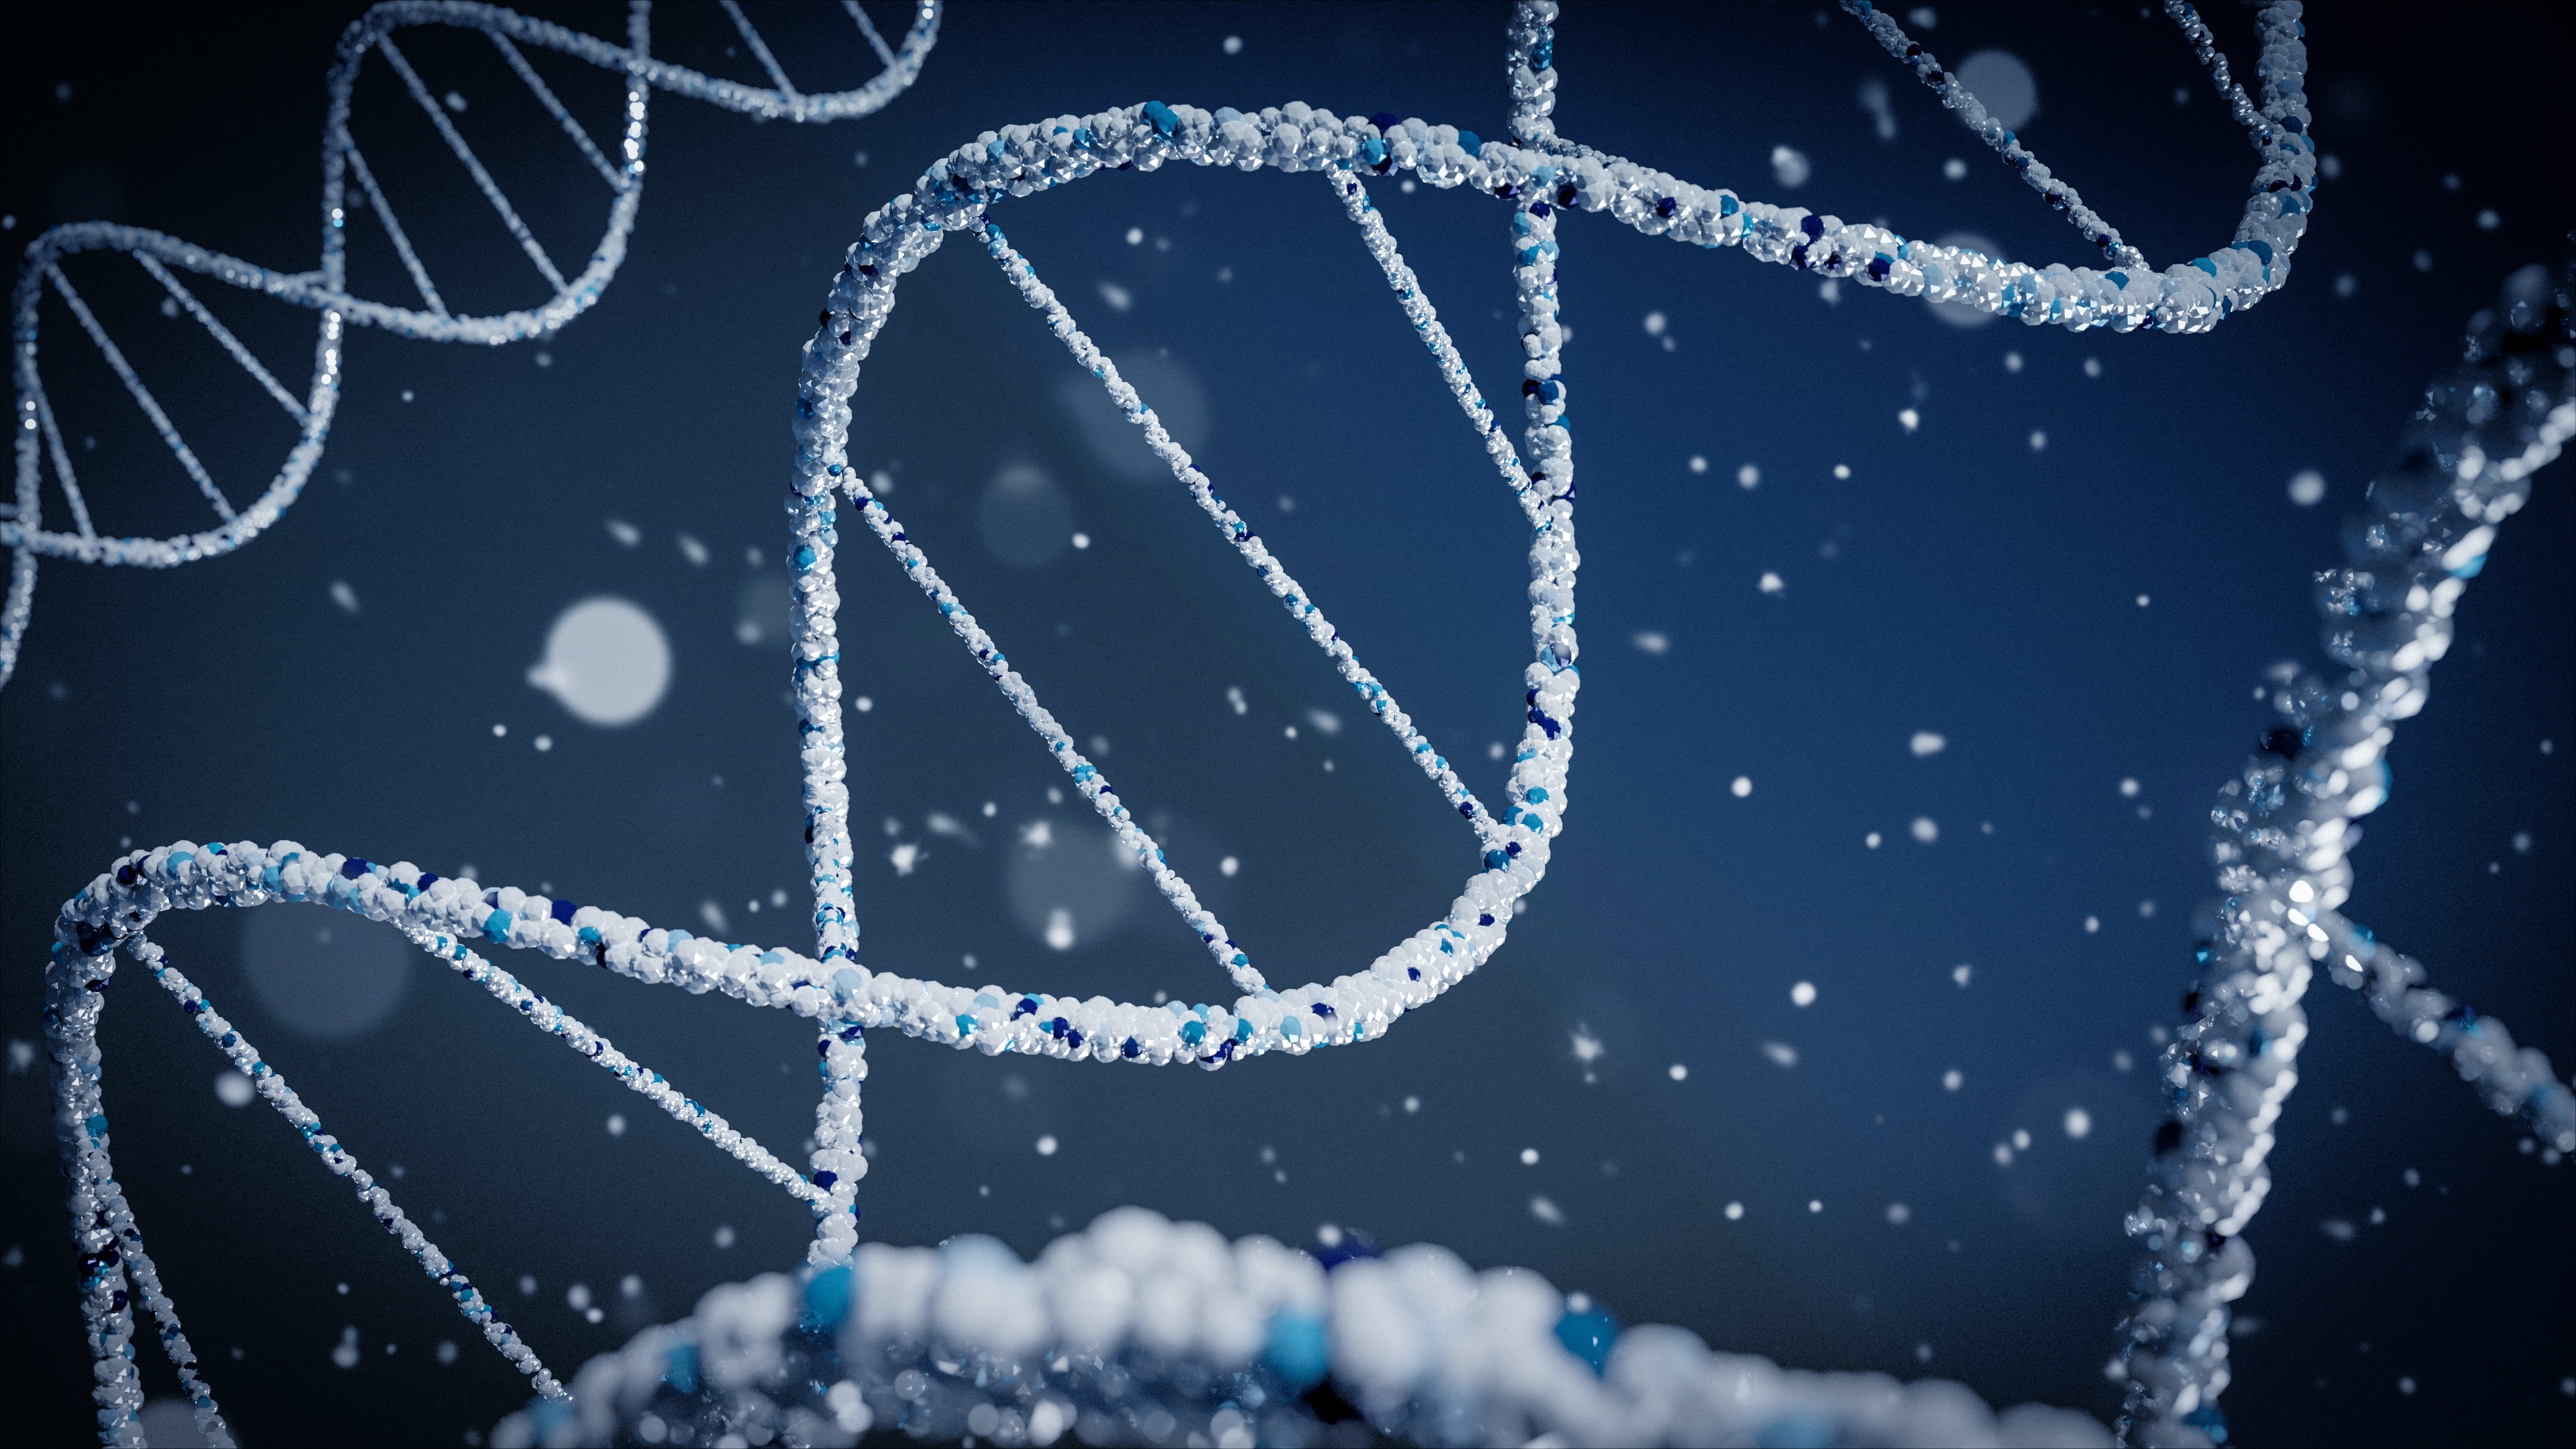 Exames de DNA podem revelar propensões tratáveis e difíceis de identificar através de outros exames (Foto: Unsplash)